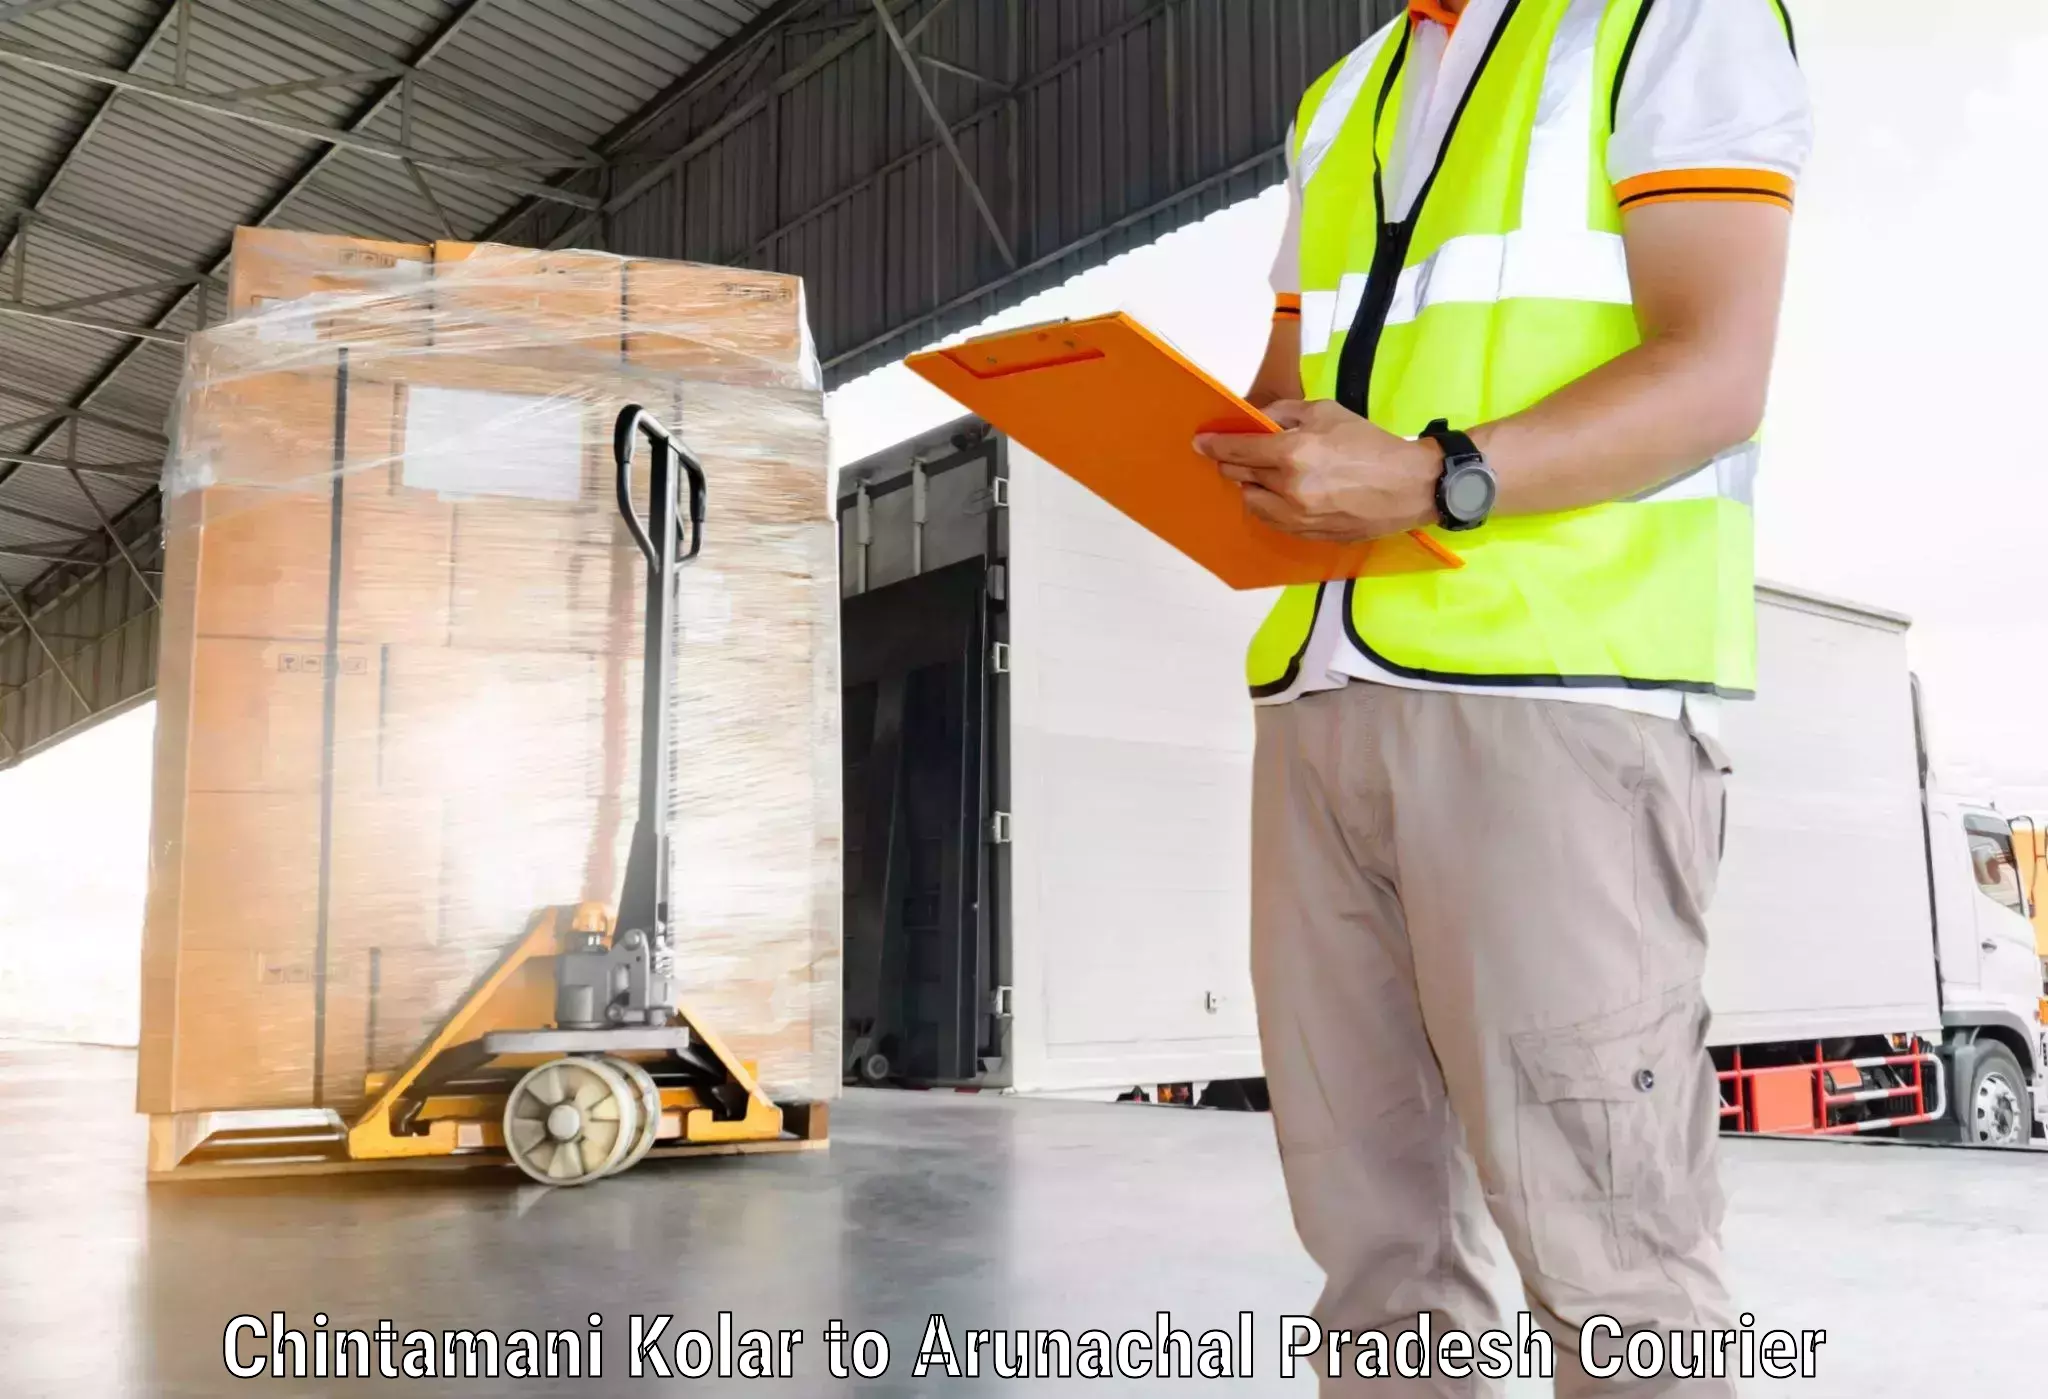 Customer-centric shipping Chintamani Kolar to Upper Siang